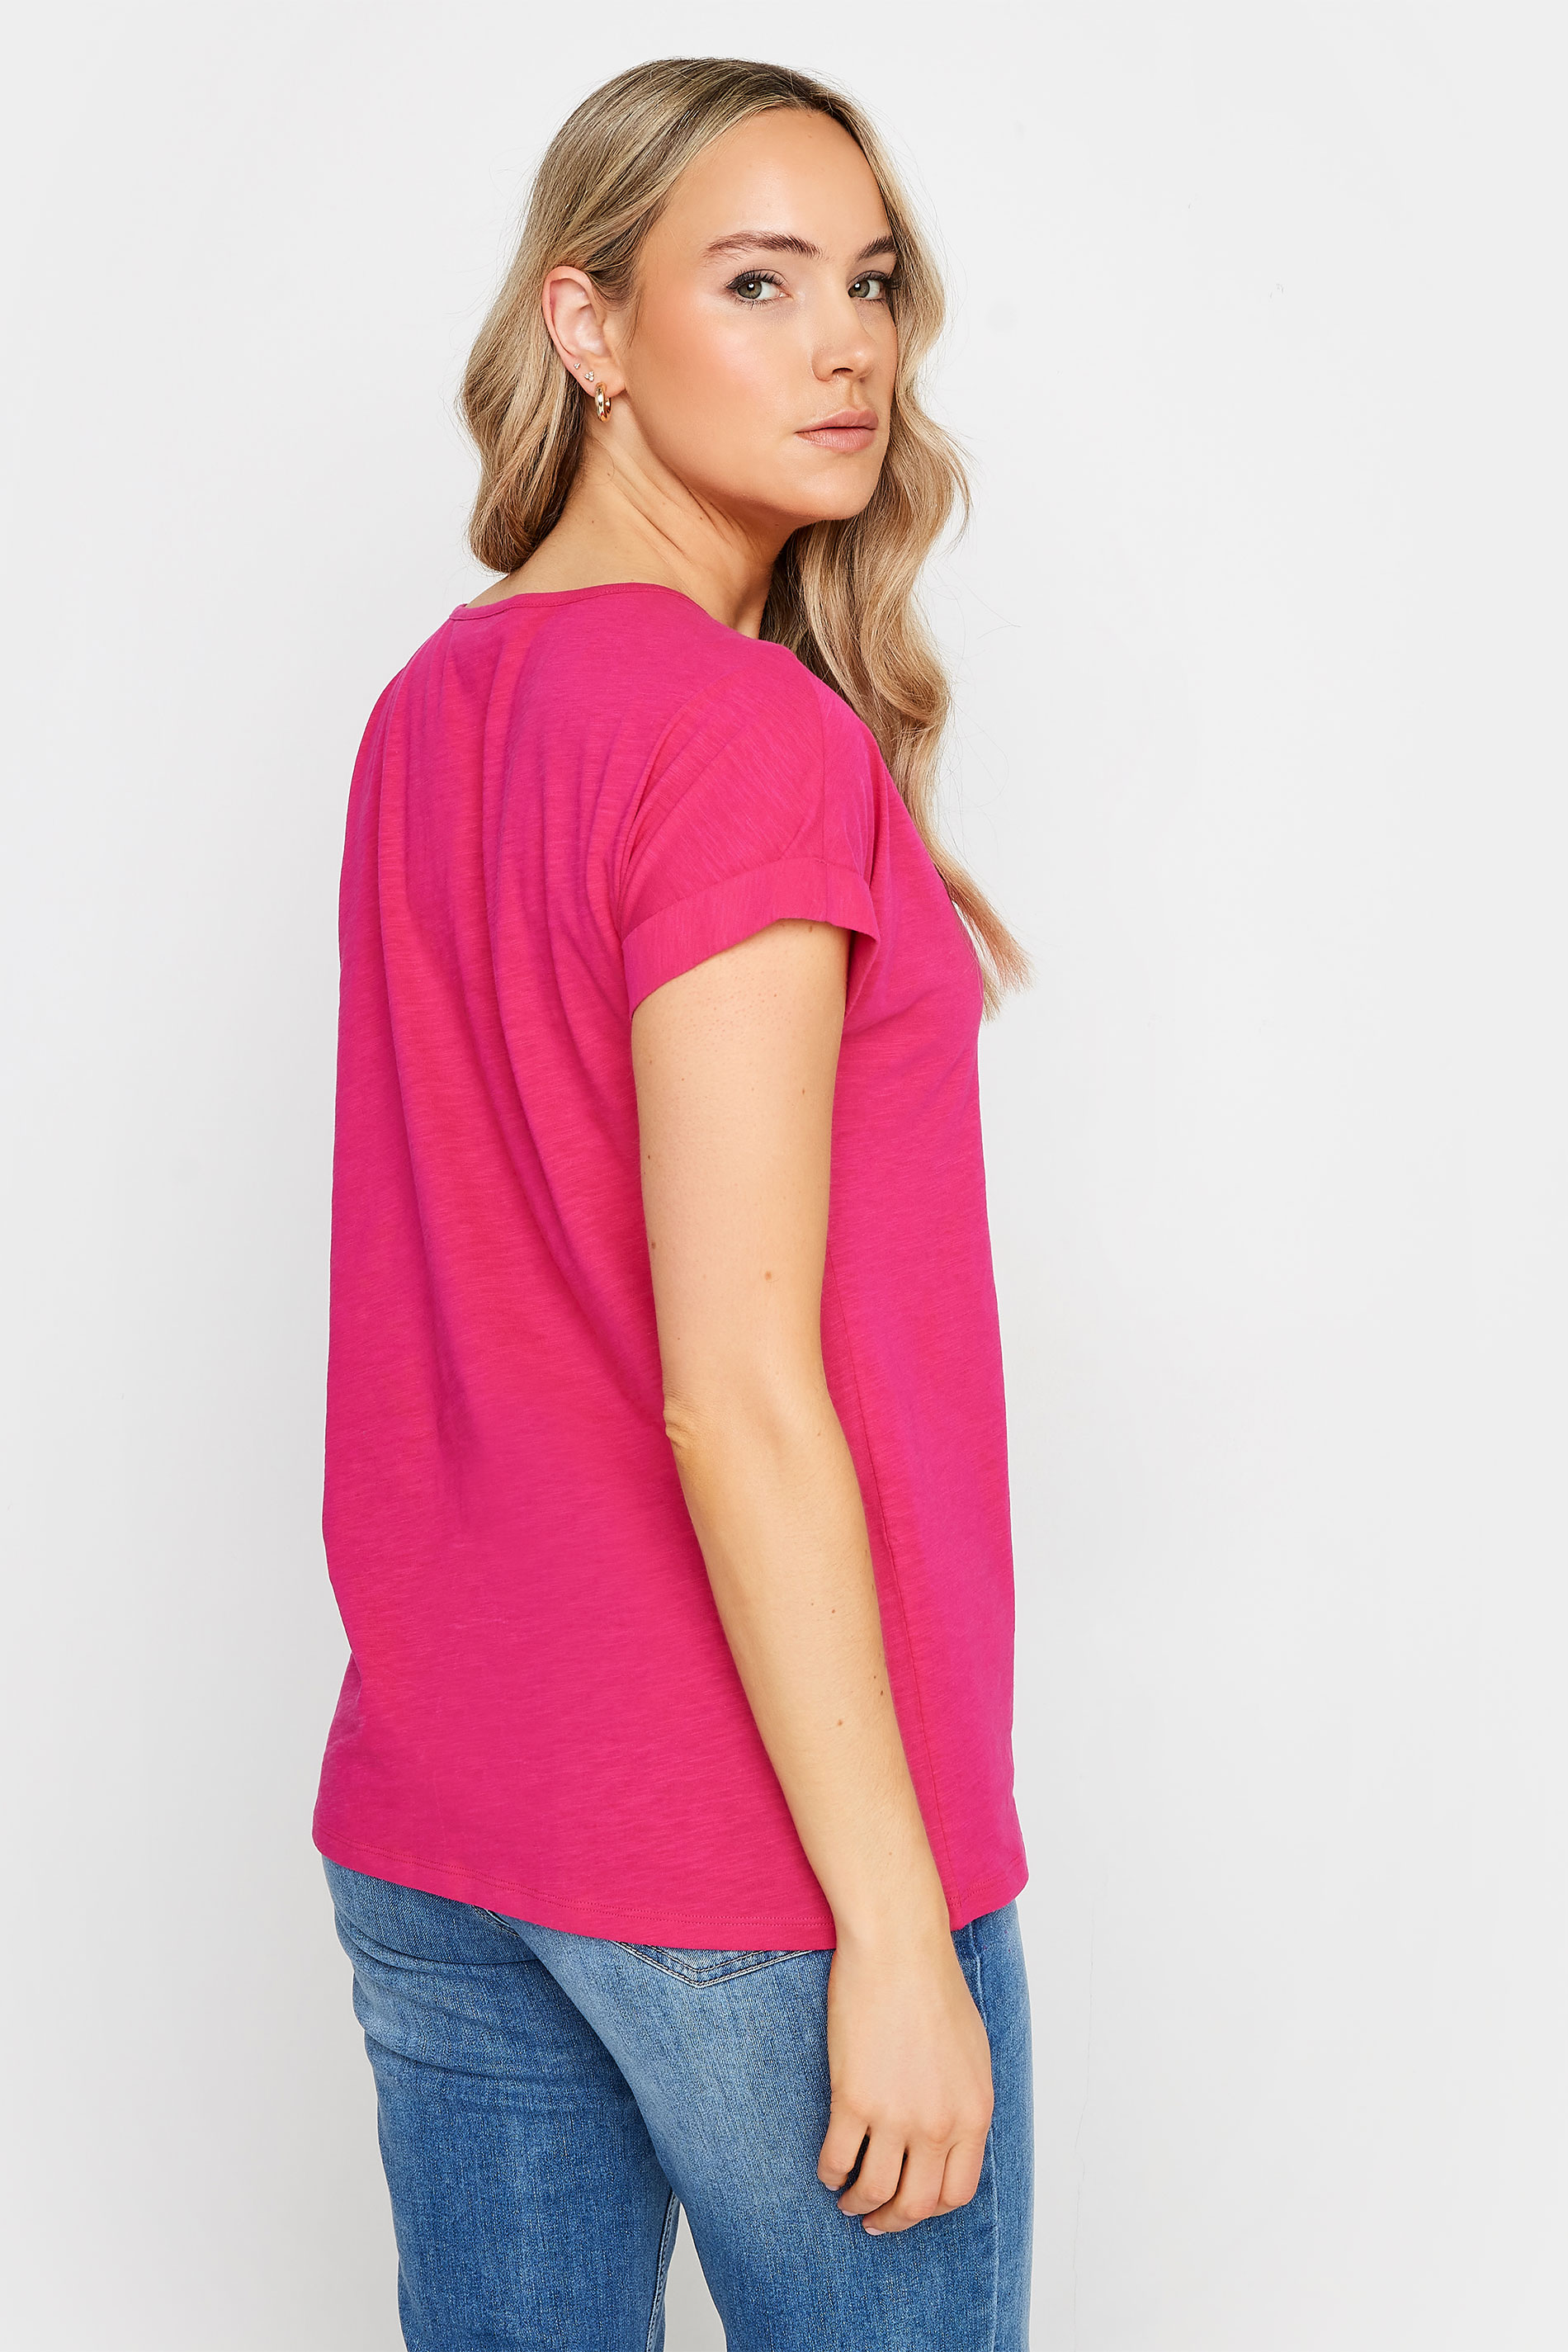 LTS Tall Women's Bright Pink Cotton Henley T-Shirt | Long Tall Sally 3